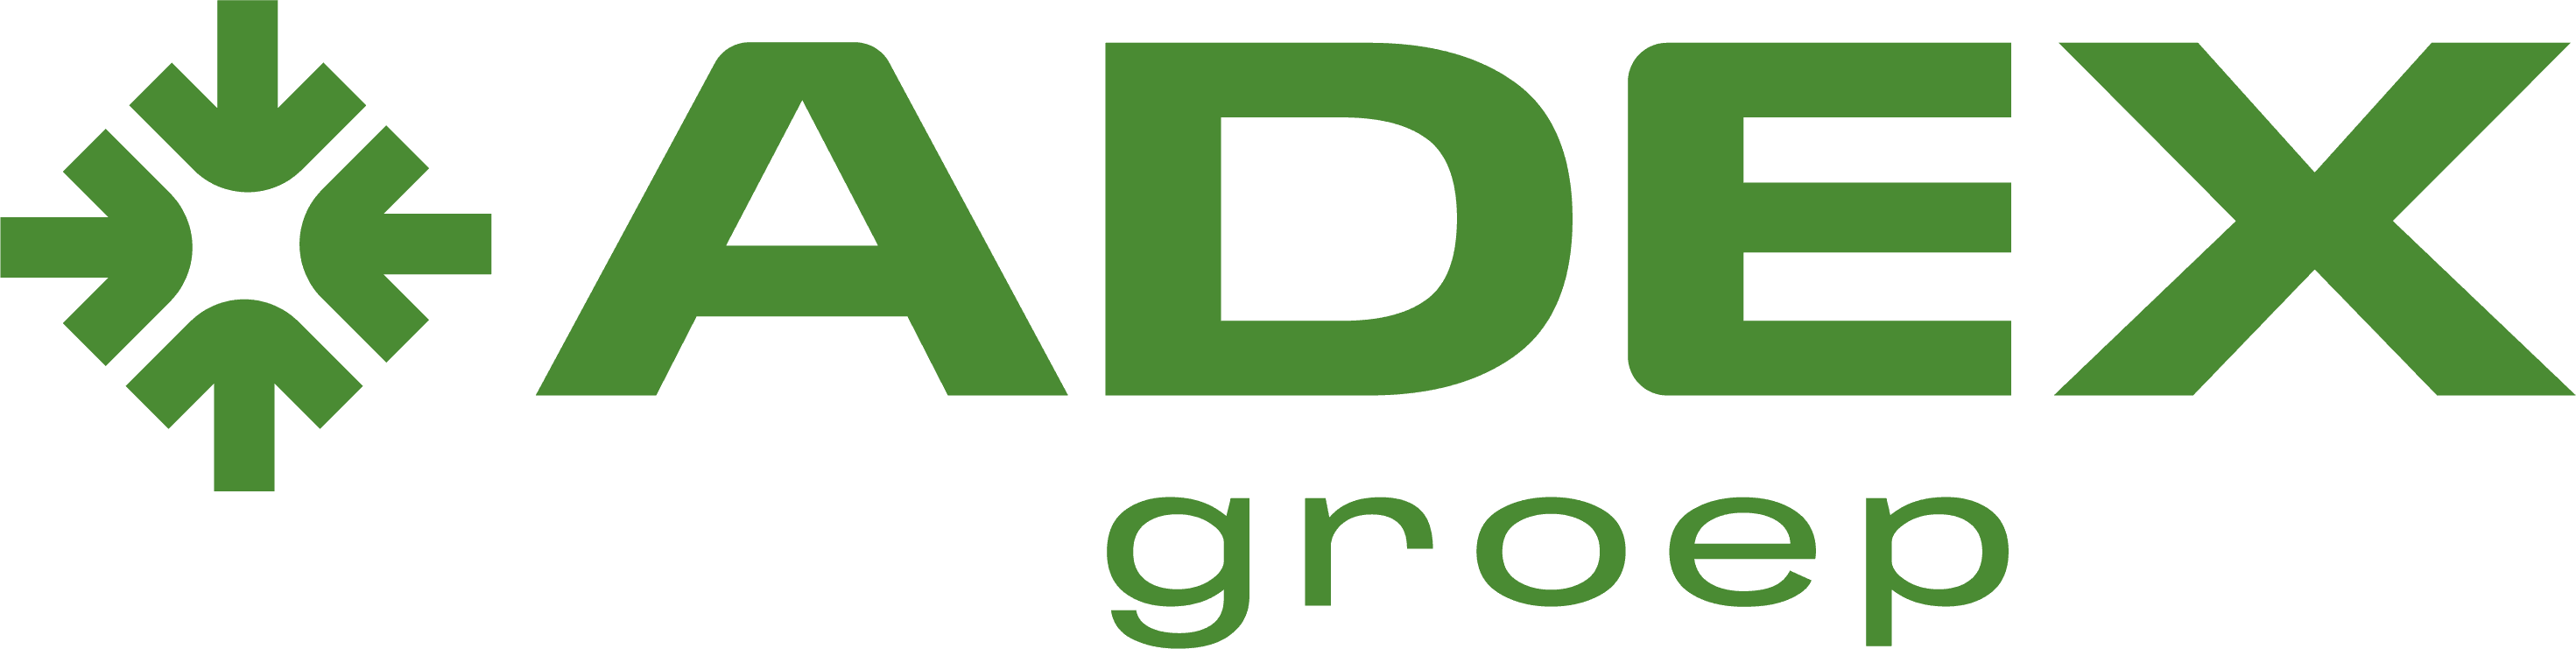 Adex Groep